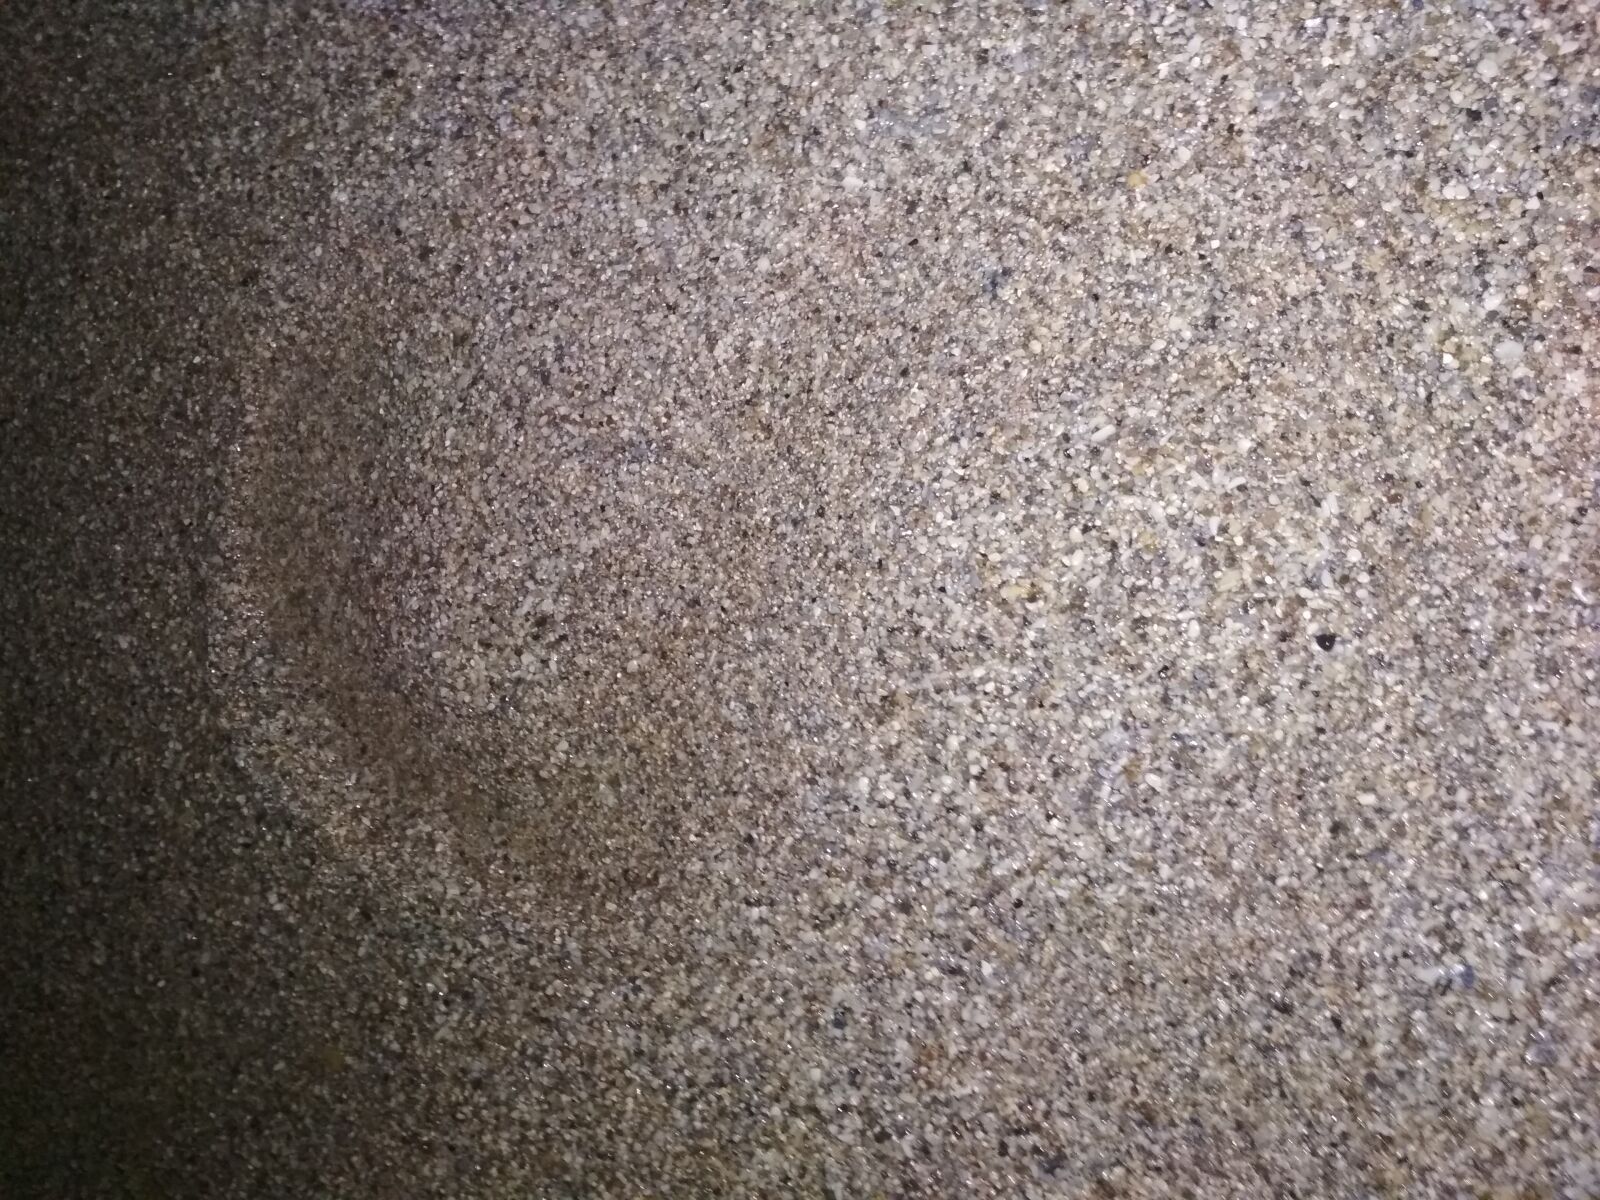 Xiaomi Redmi 4 Pro sample photo. Sand, sea shore, night photography